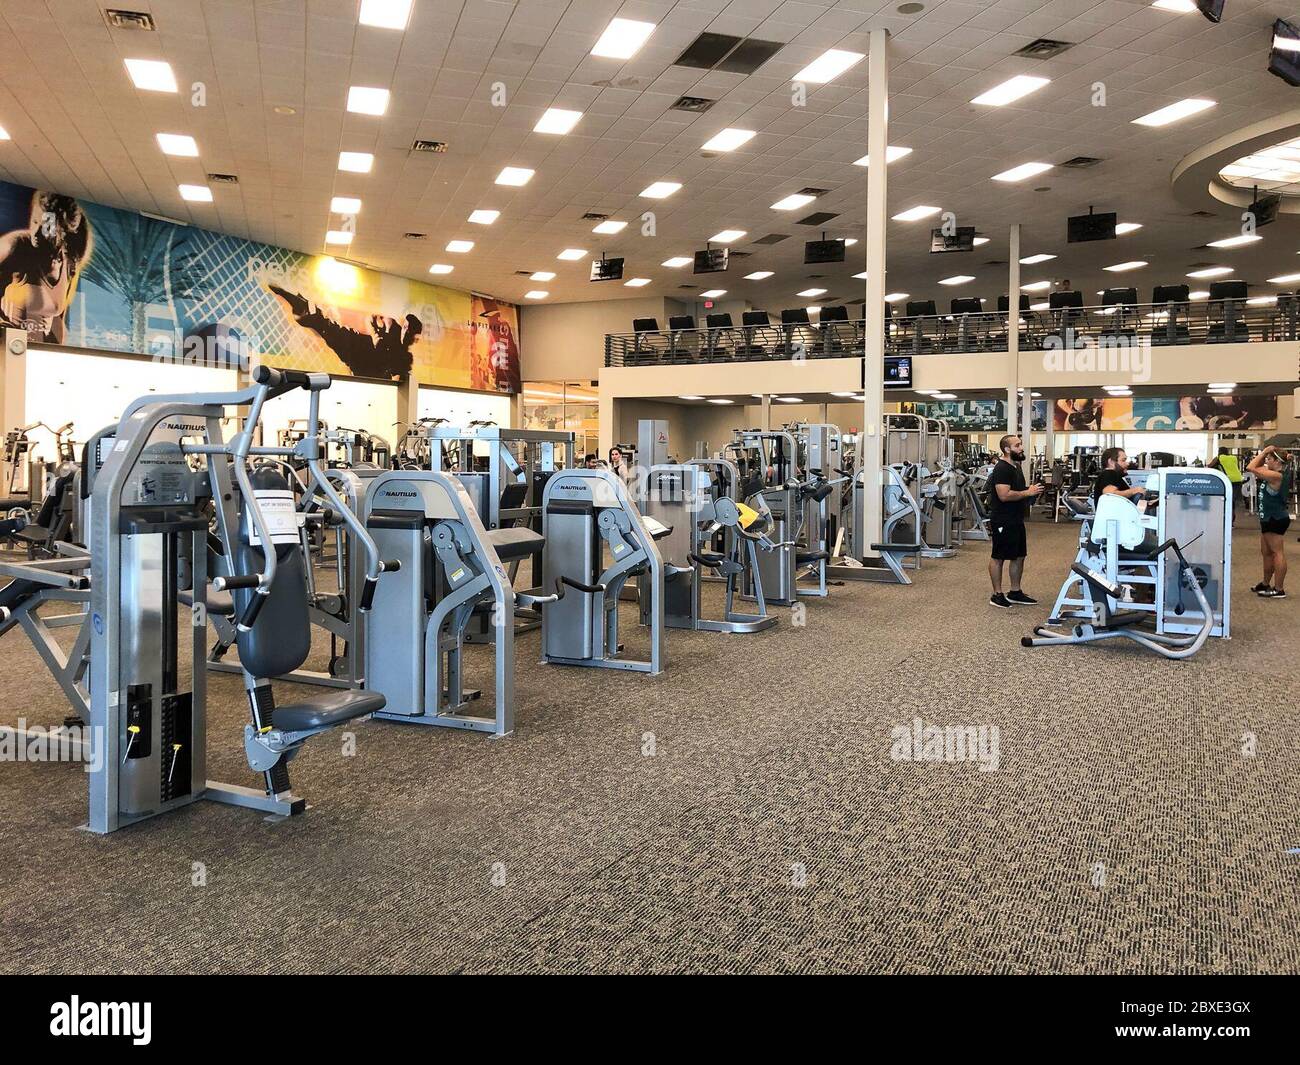 LA Fitness now open, photos from inside – My Ballard